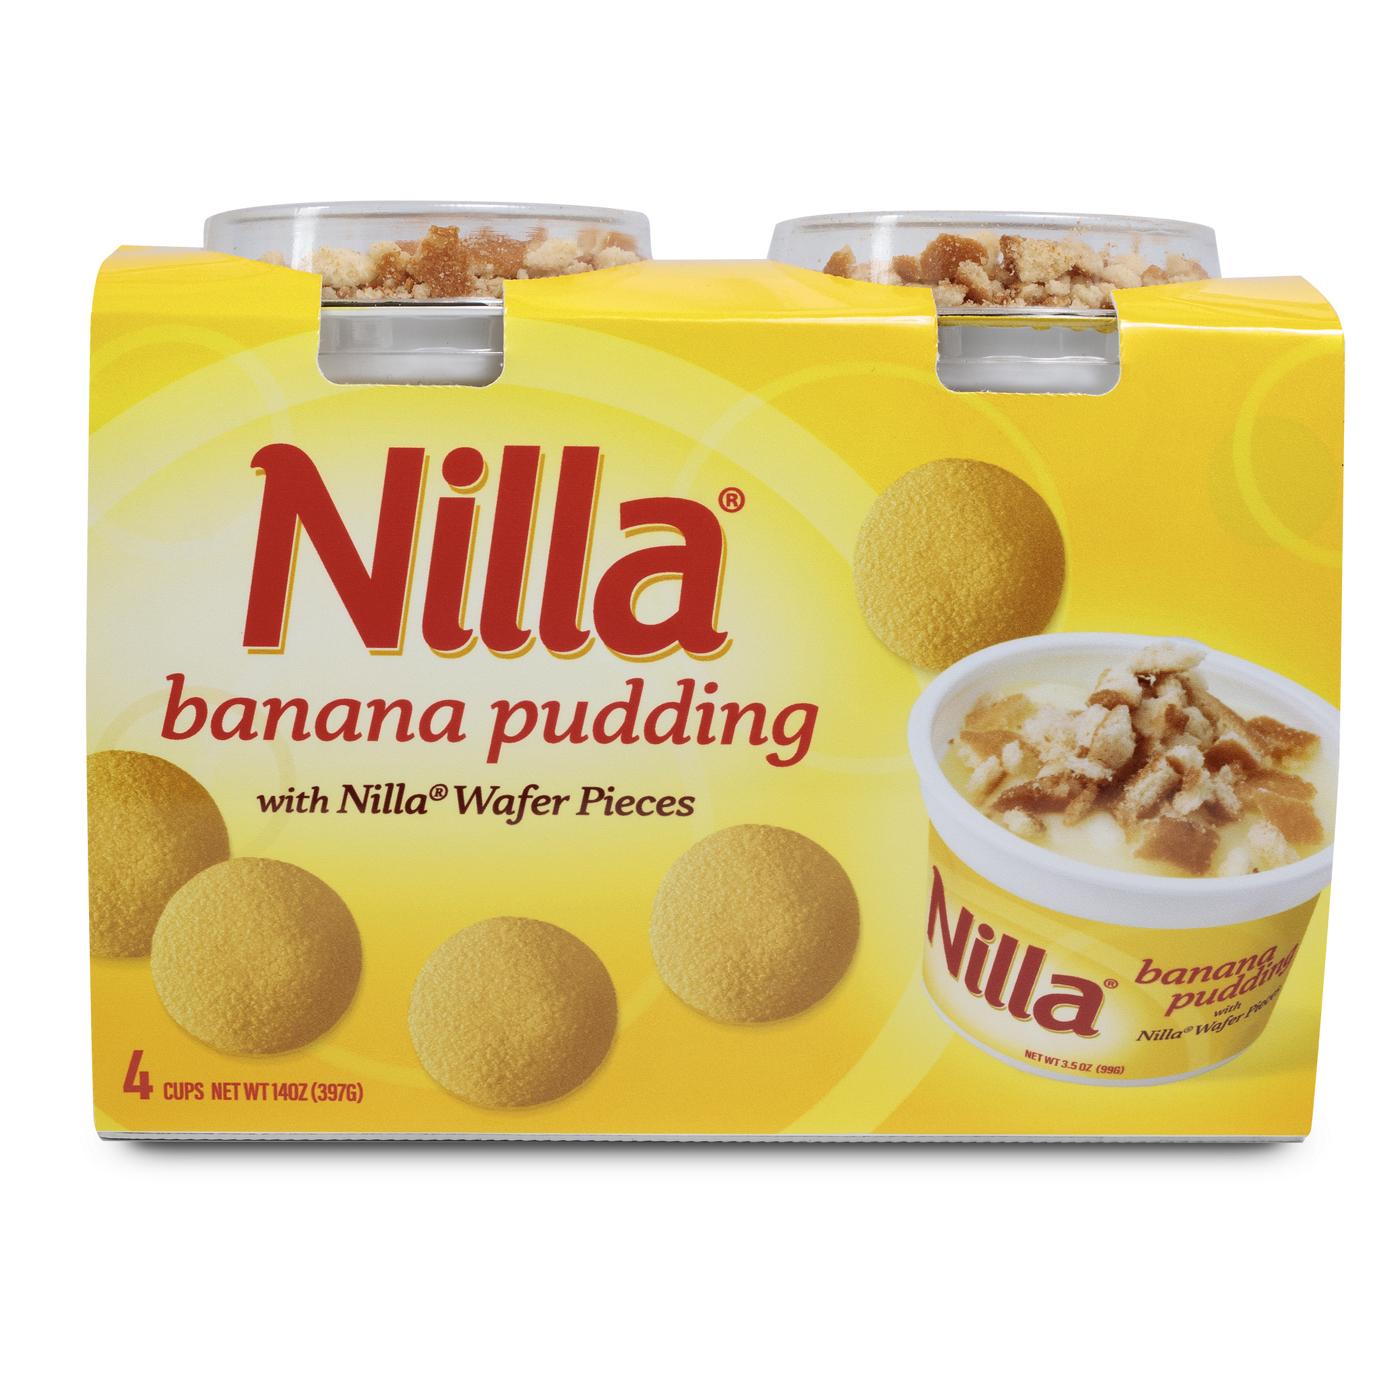 Nilla Banana Pudding With Nilla Wafer Pieces; image 1 of 2